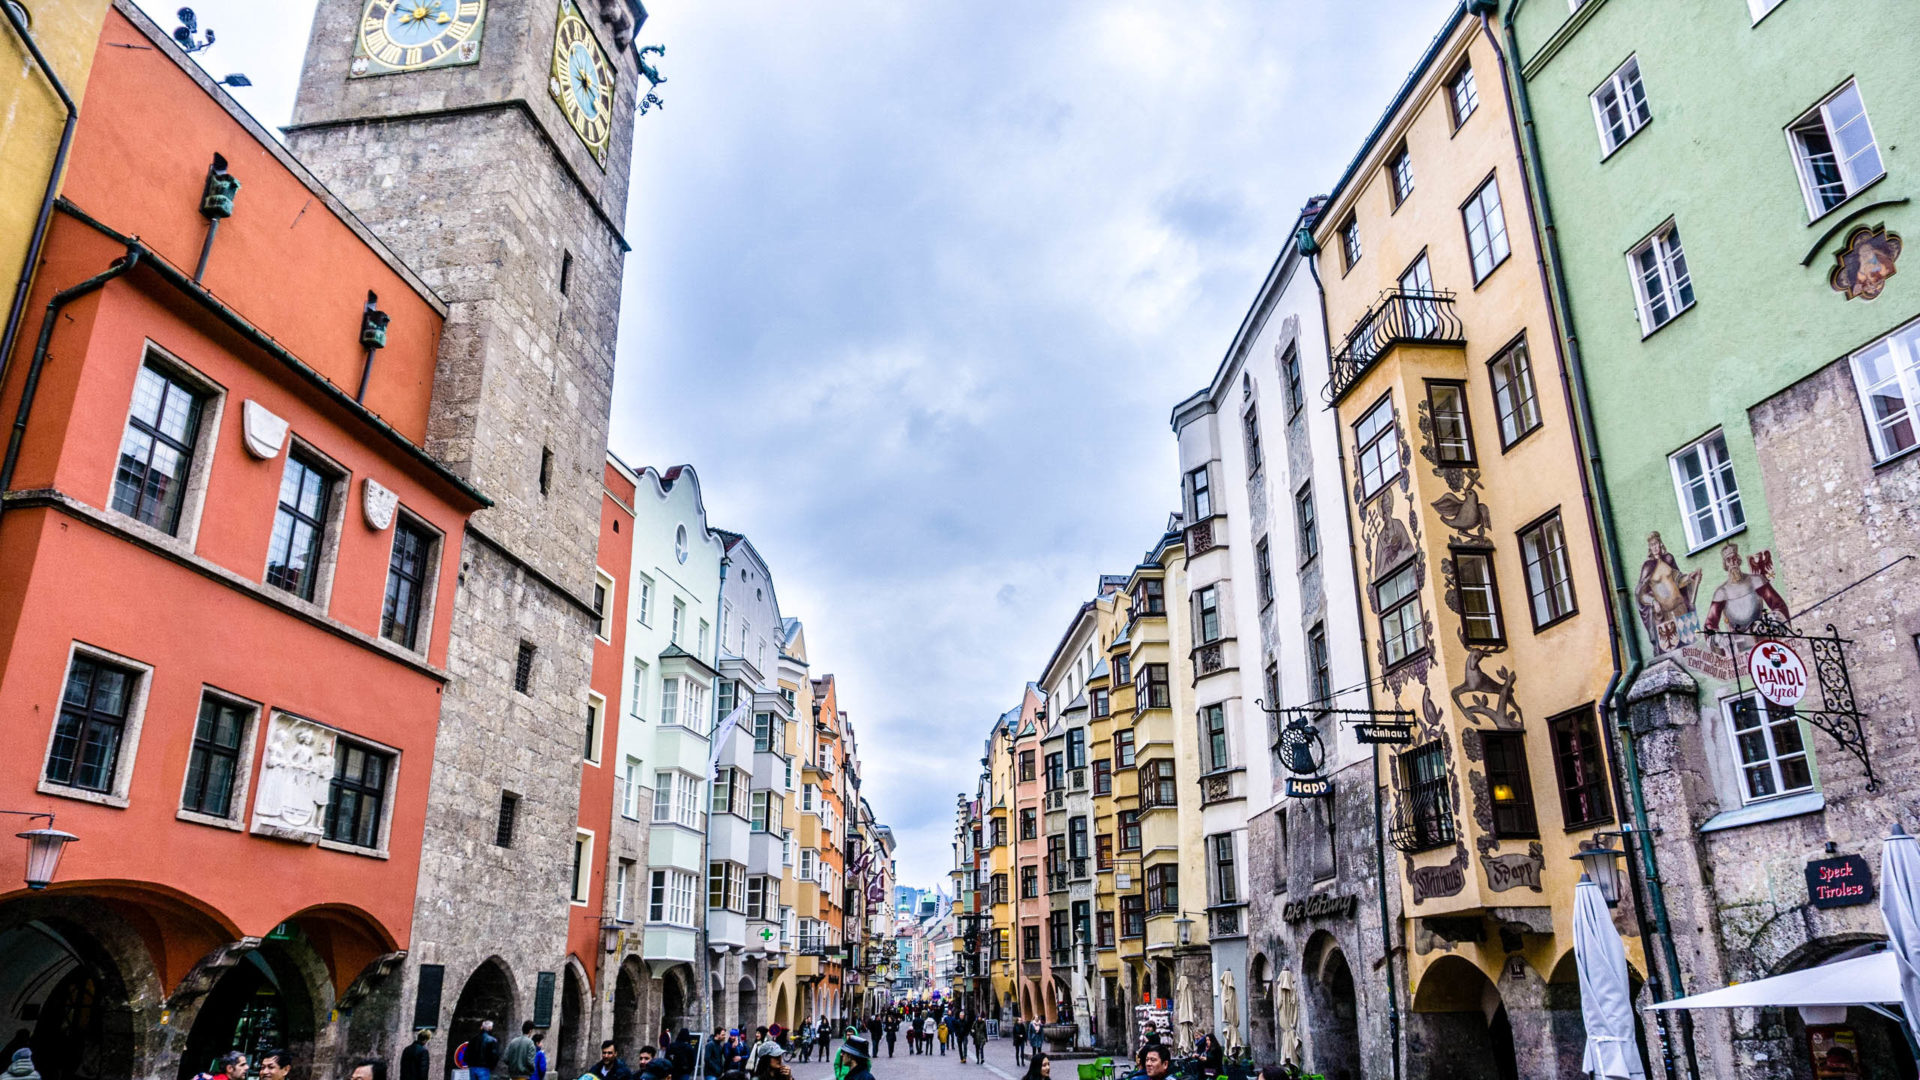 Das Stadtzentrum von Innsbruck, Österreich